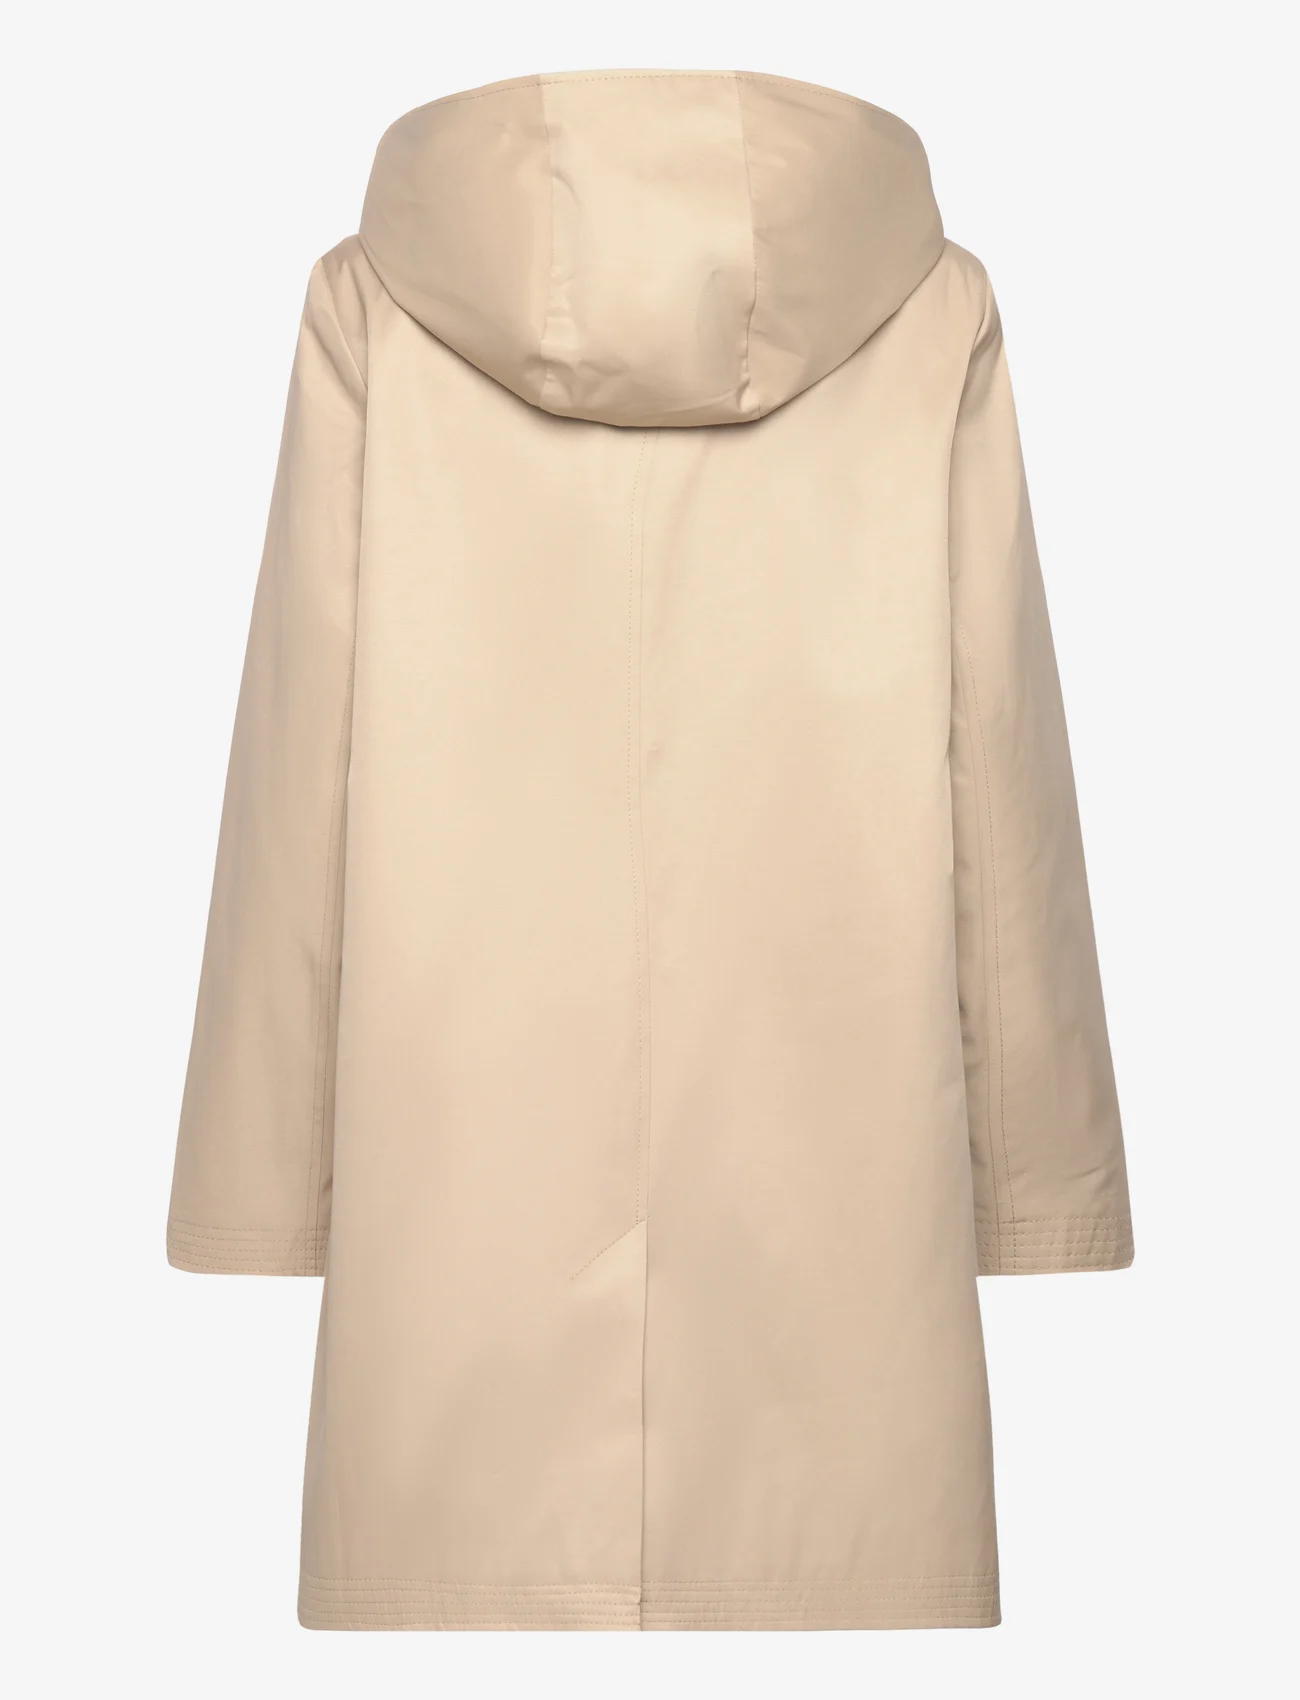 Lauren Ralph Lauren - Hooded Cotton-Blend Balmacaan Coat - light coats - birch tan - 1